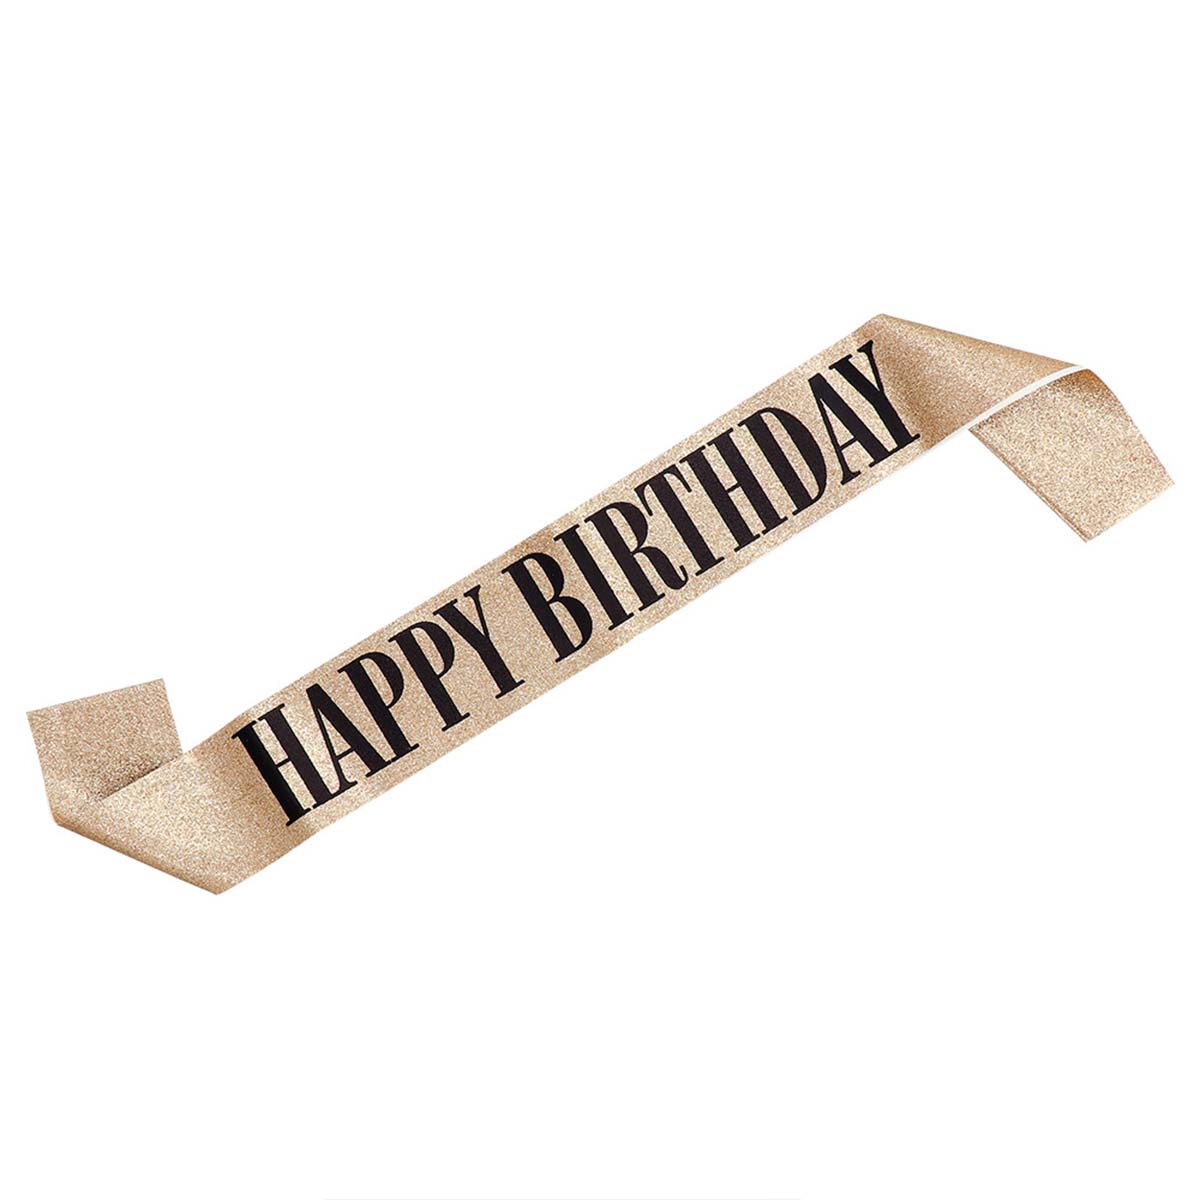 Ordensband, happy birthday guld